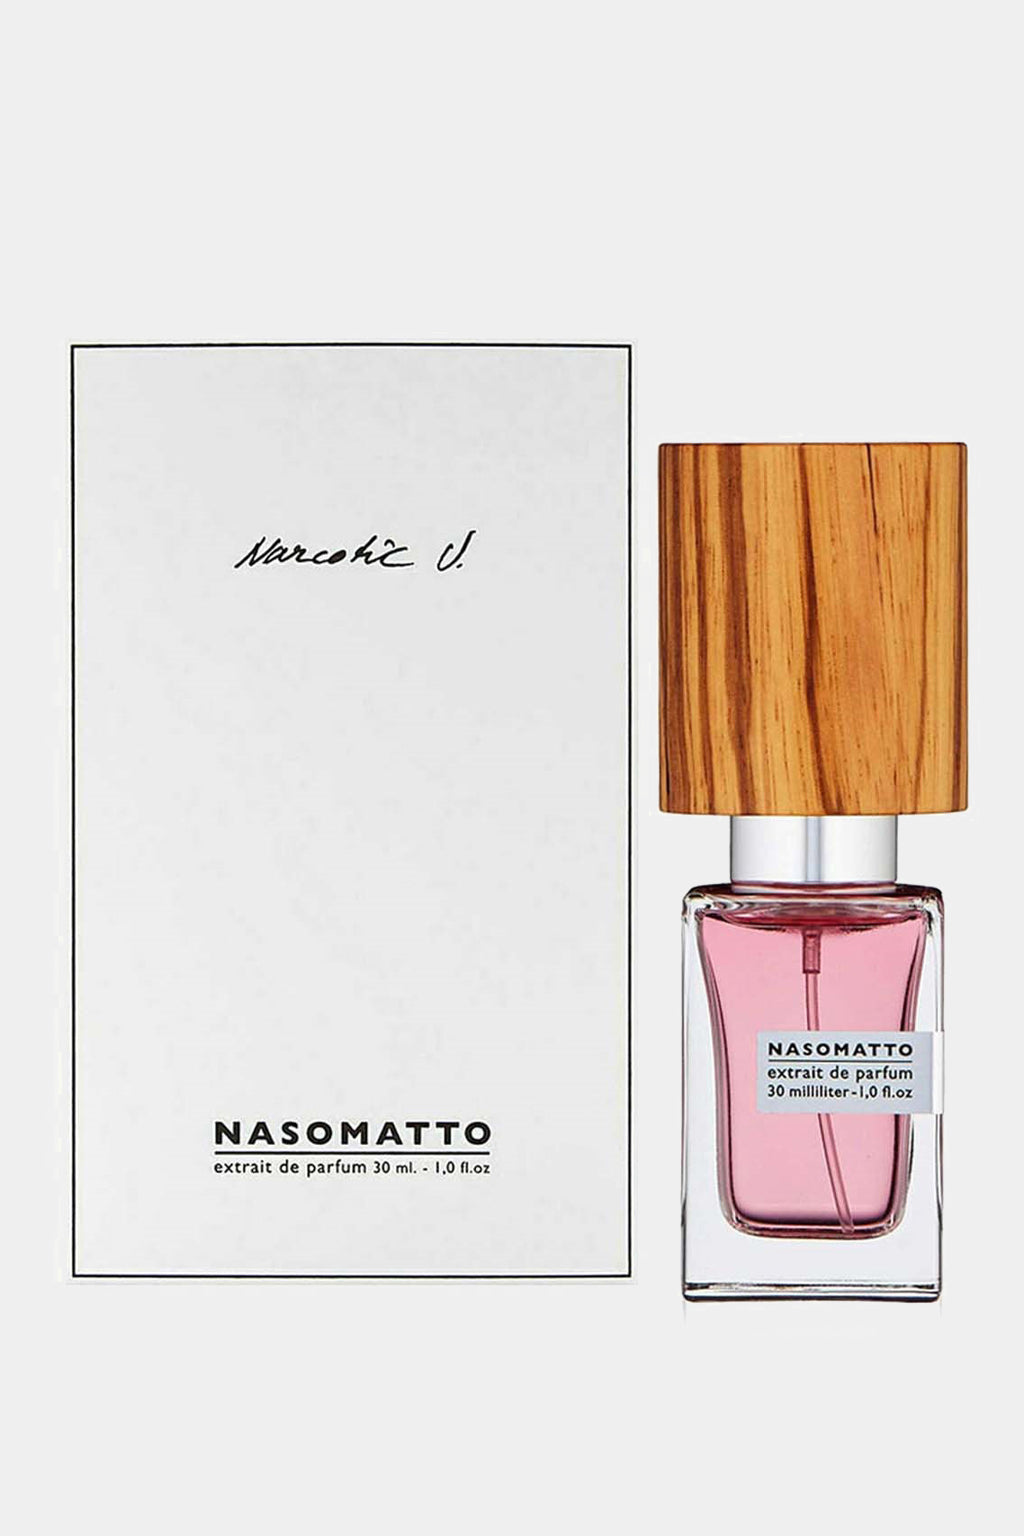 Nasomatto - Narcotic V Eau de Parfum